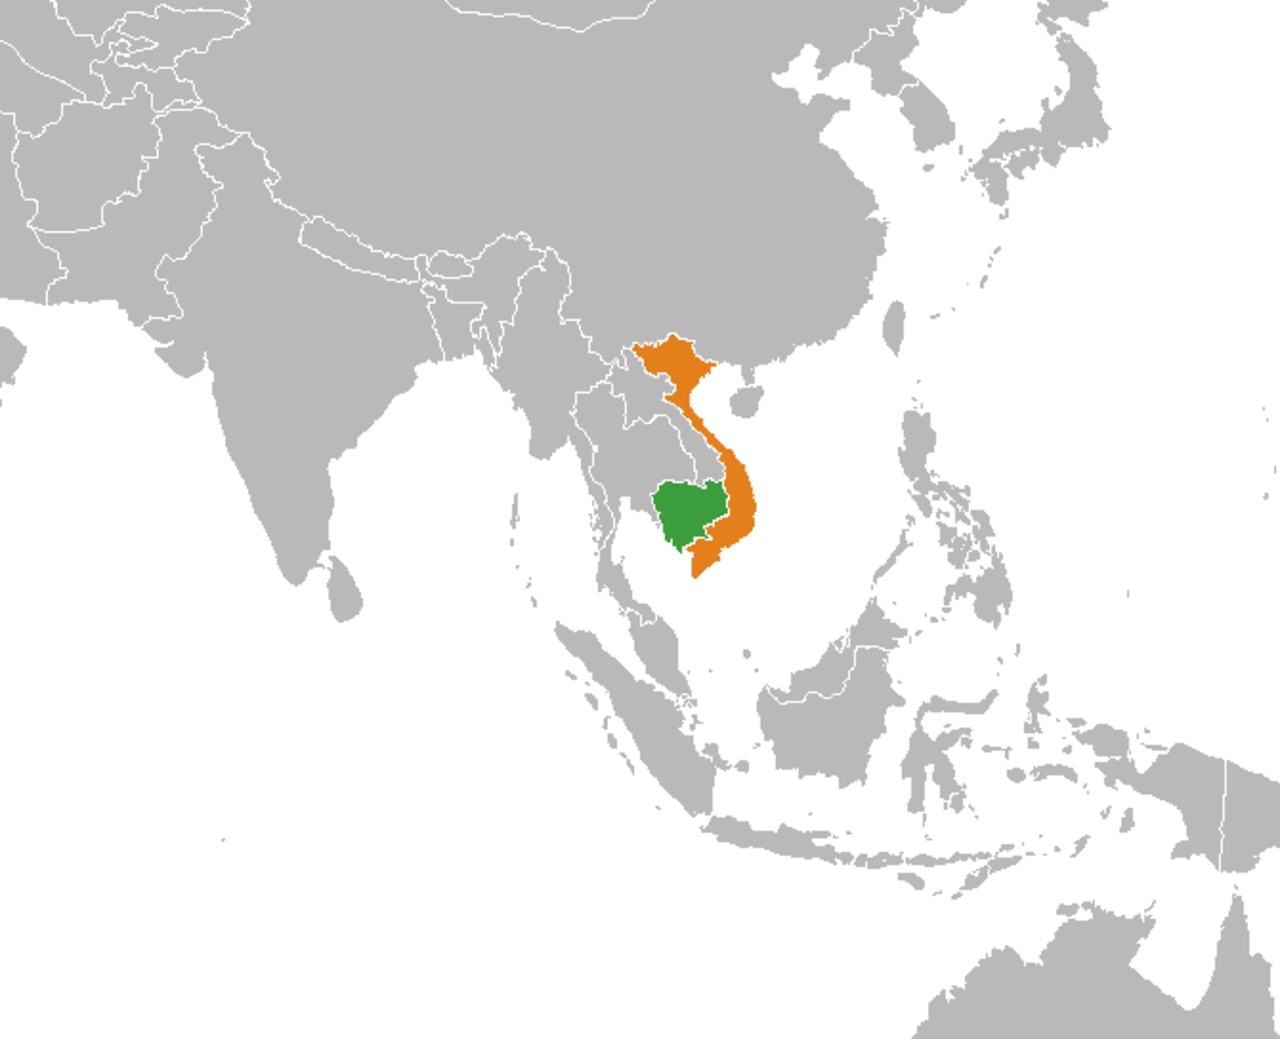 Bản đồ cho thấy vị trí của Việt Nam - Campuchia